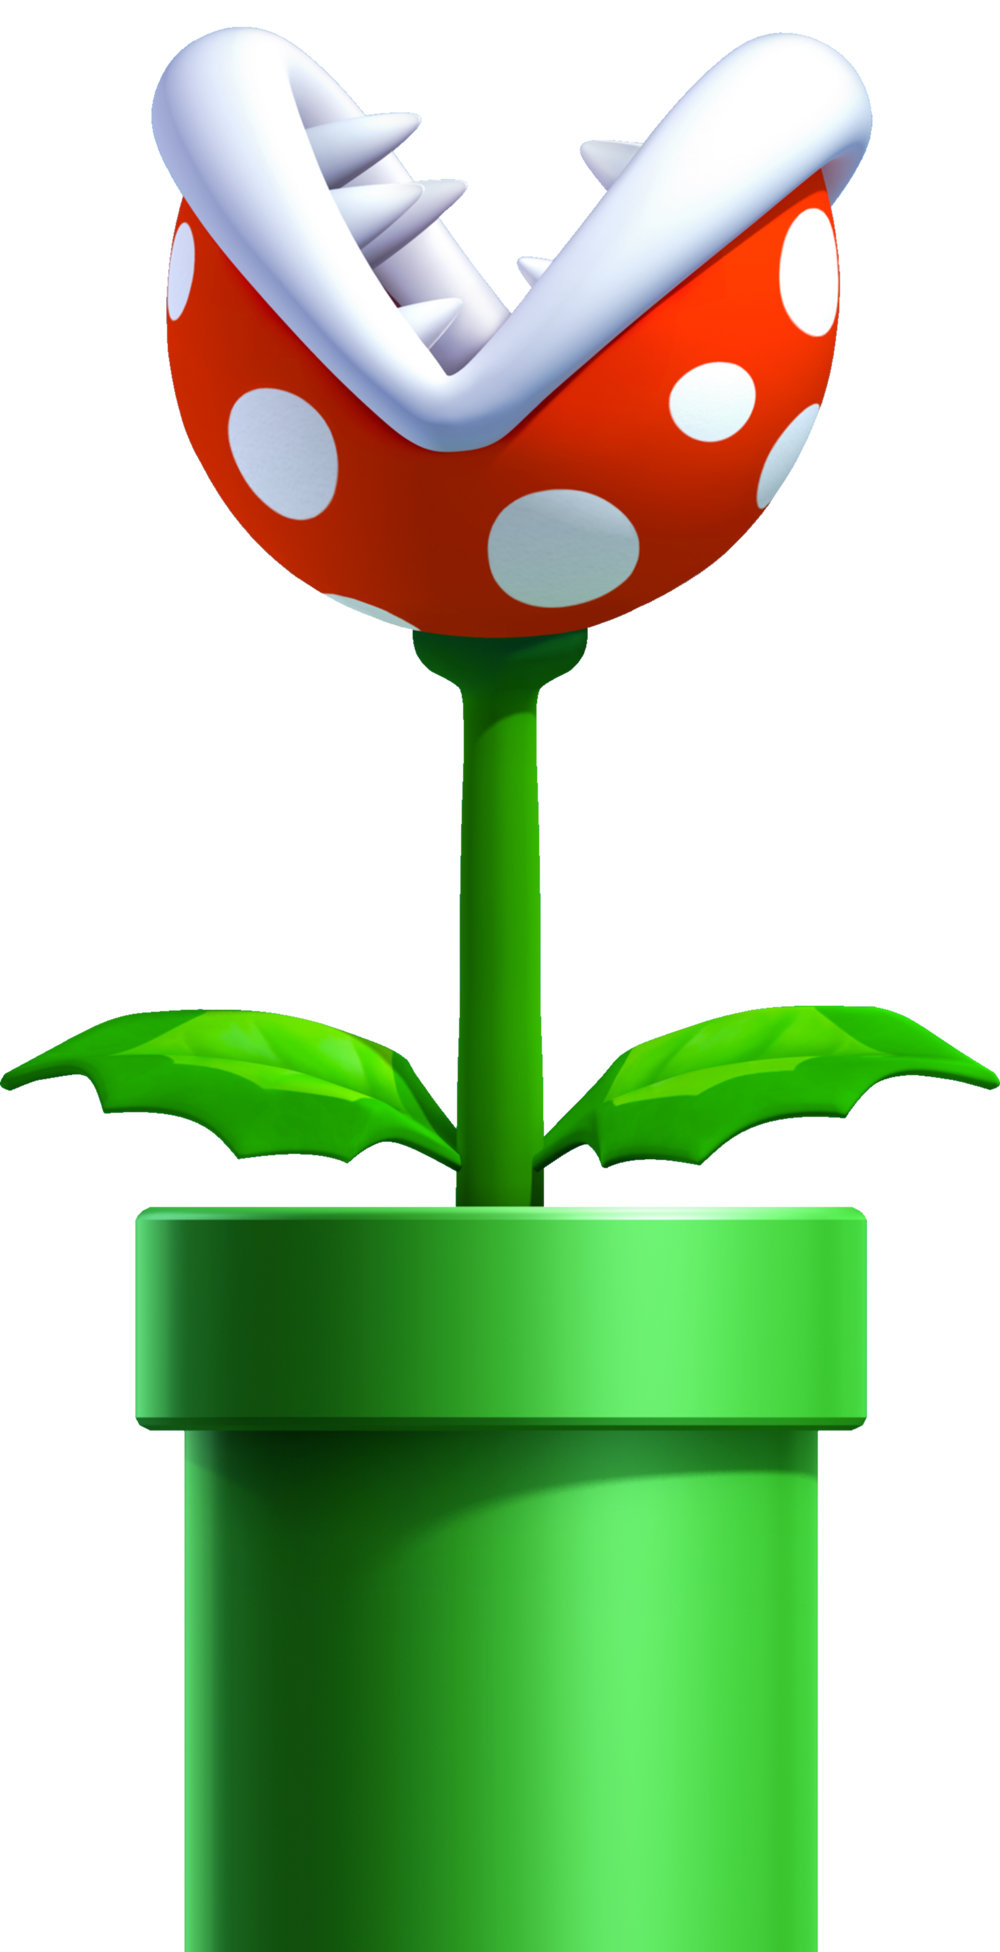 Mario Calculator - Super Mario Wiki, the Mario encyclopedia